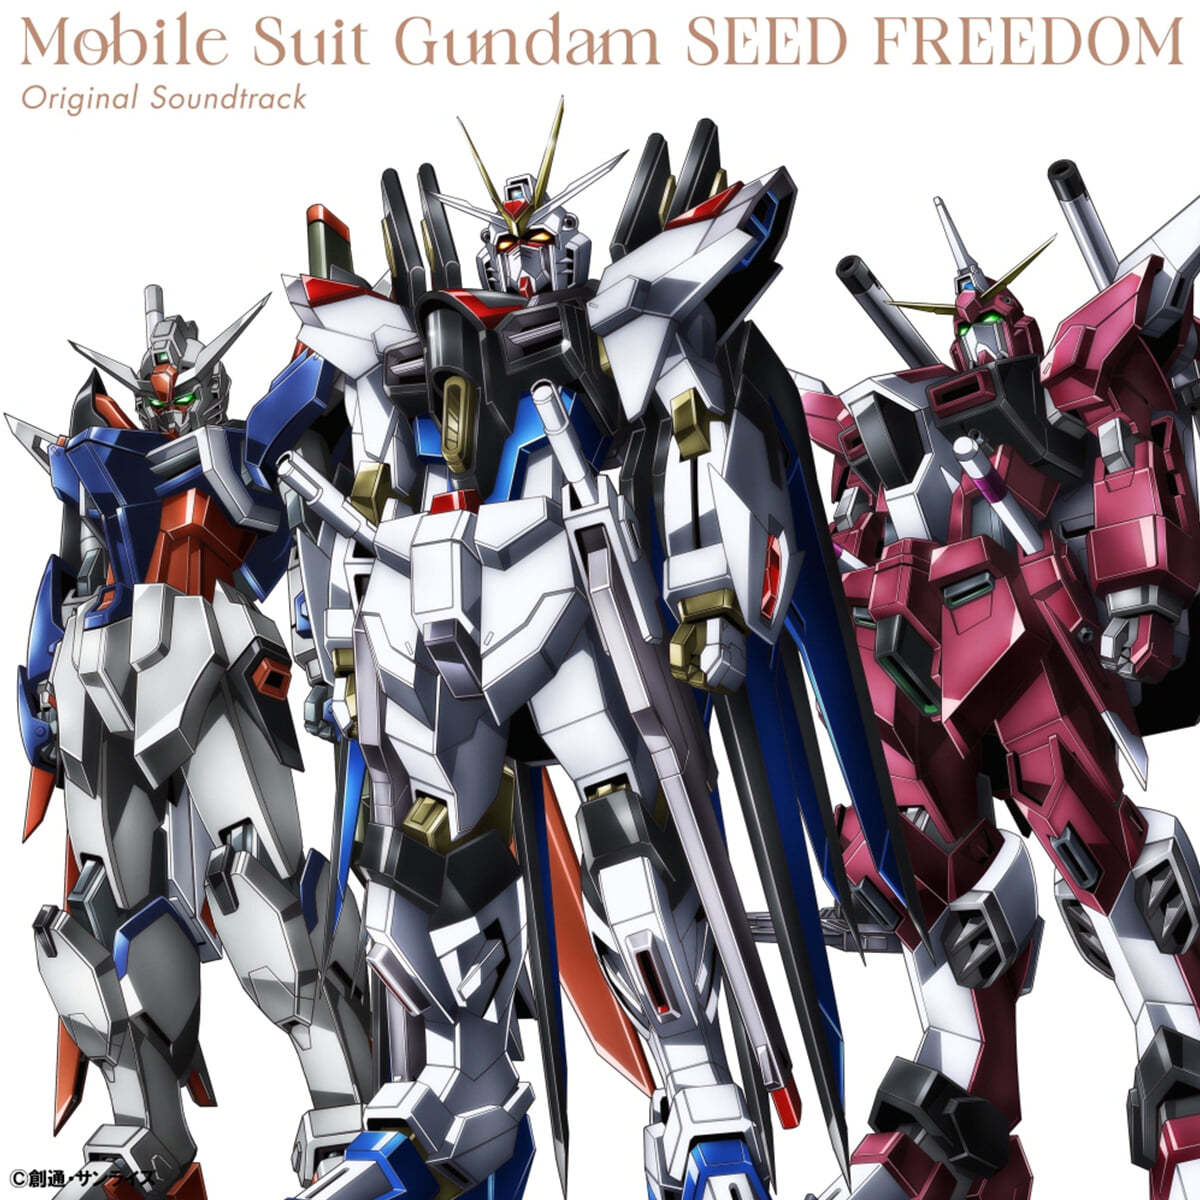 기동전사 건담  Seed Freedom 애니메이션 음악 (Mobile Suit Gundam SEED FREEDOM OST by Sahashi Toshihiko) [컬러 3LP]